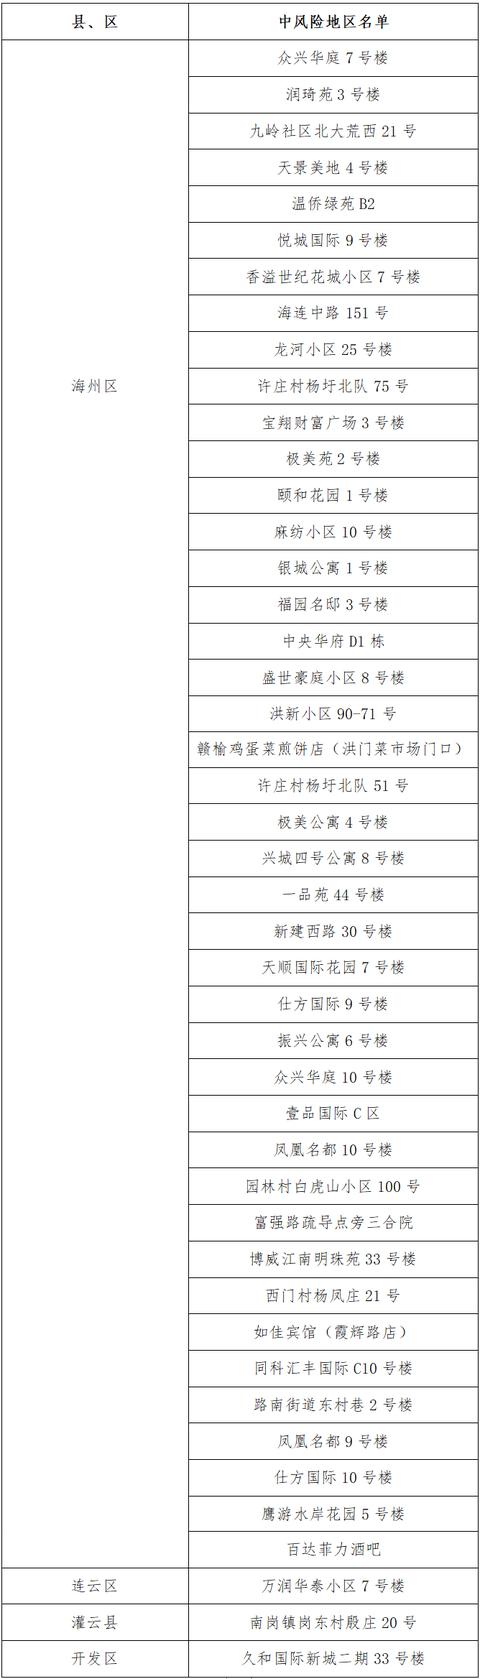 关于疫情防控 连云港刚刚发布最新信息的通知「连云港疫情」